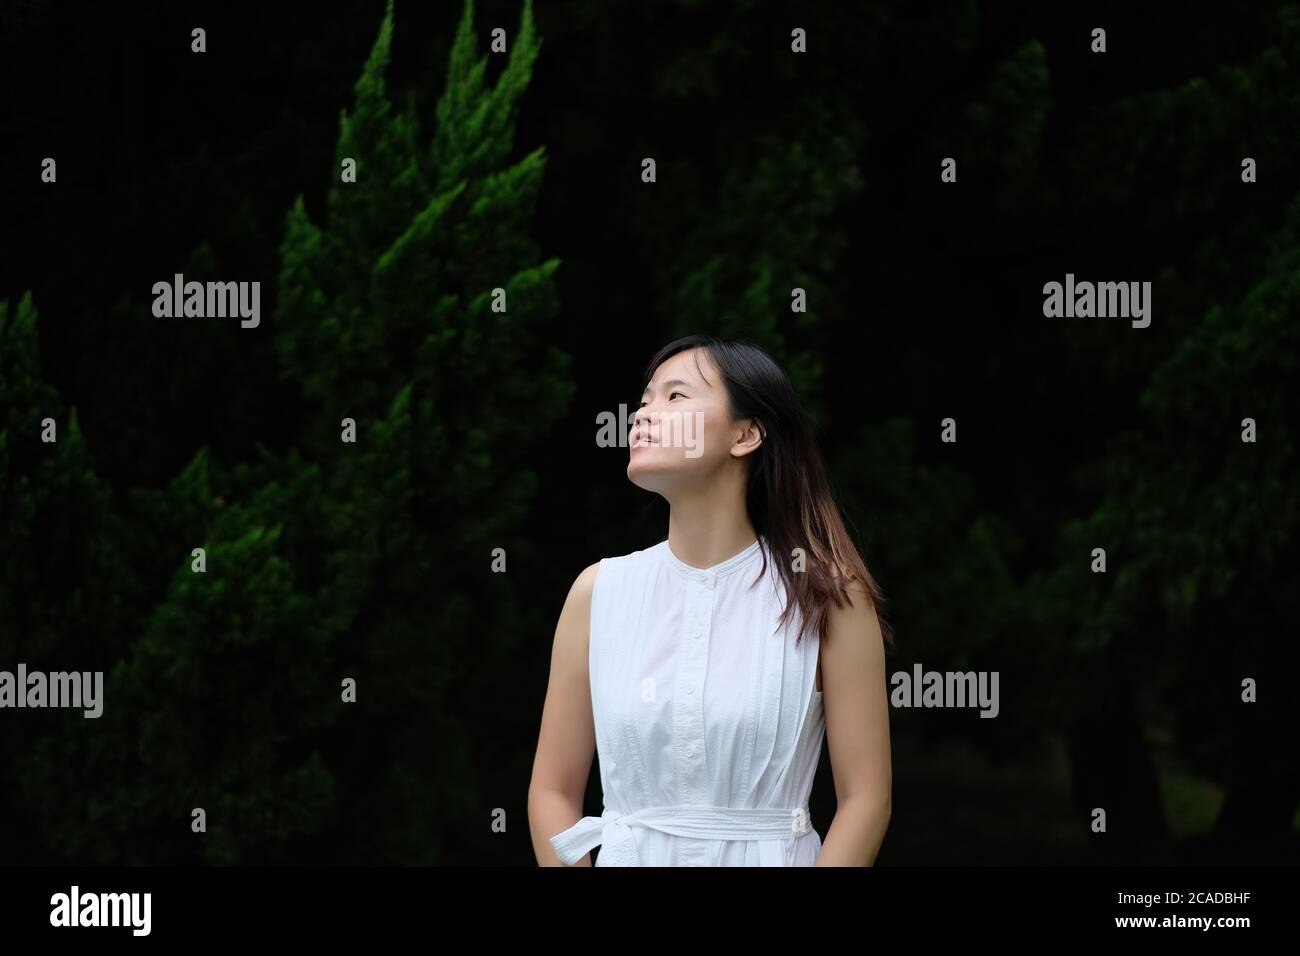 Une fille asiatique en jupe blanche pure, debout devant un pin sous la lumière naturelle du jour. Arrière-plan sombre flou défoqué. Beauté naturelle Banque D'Images